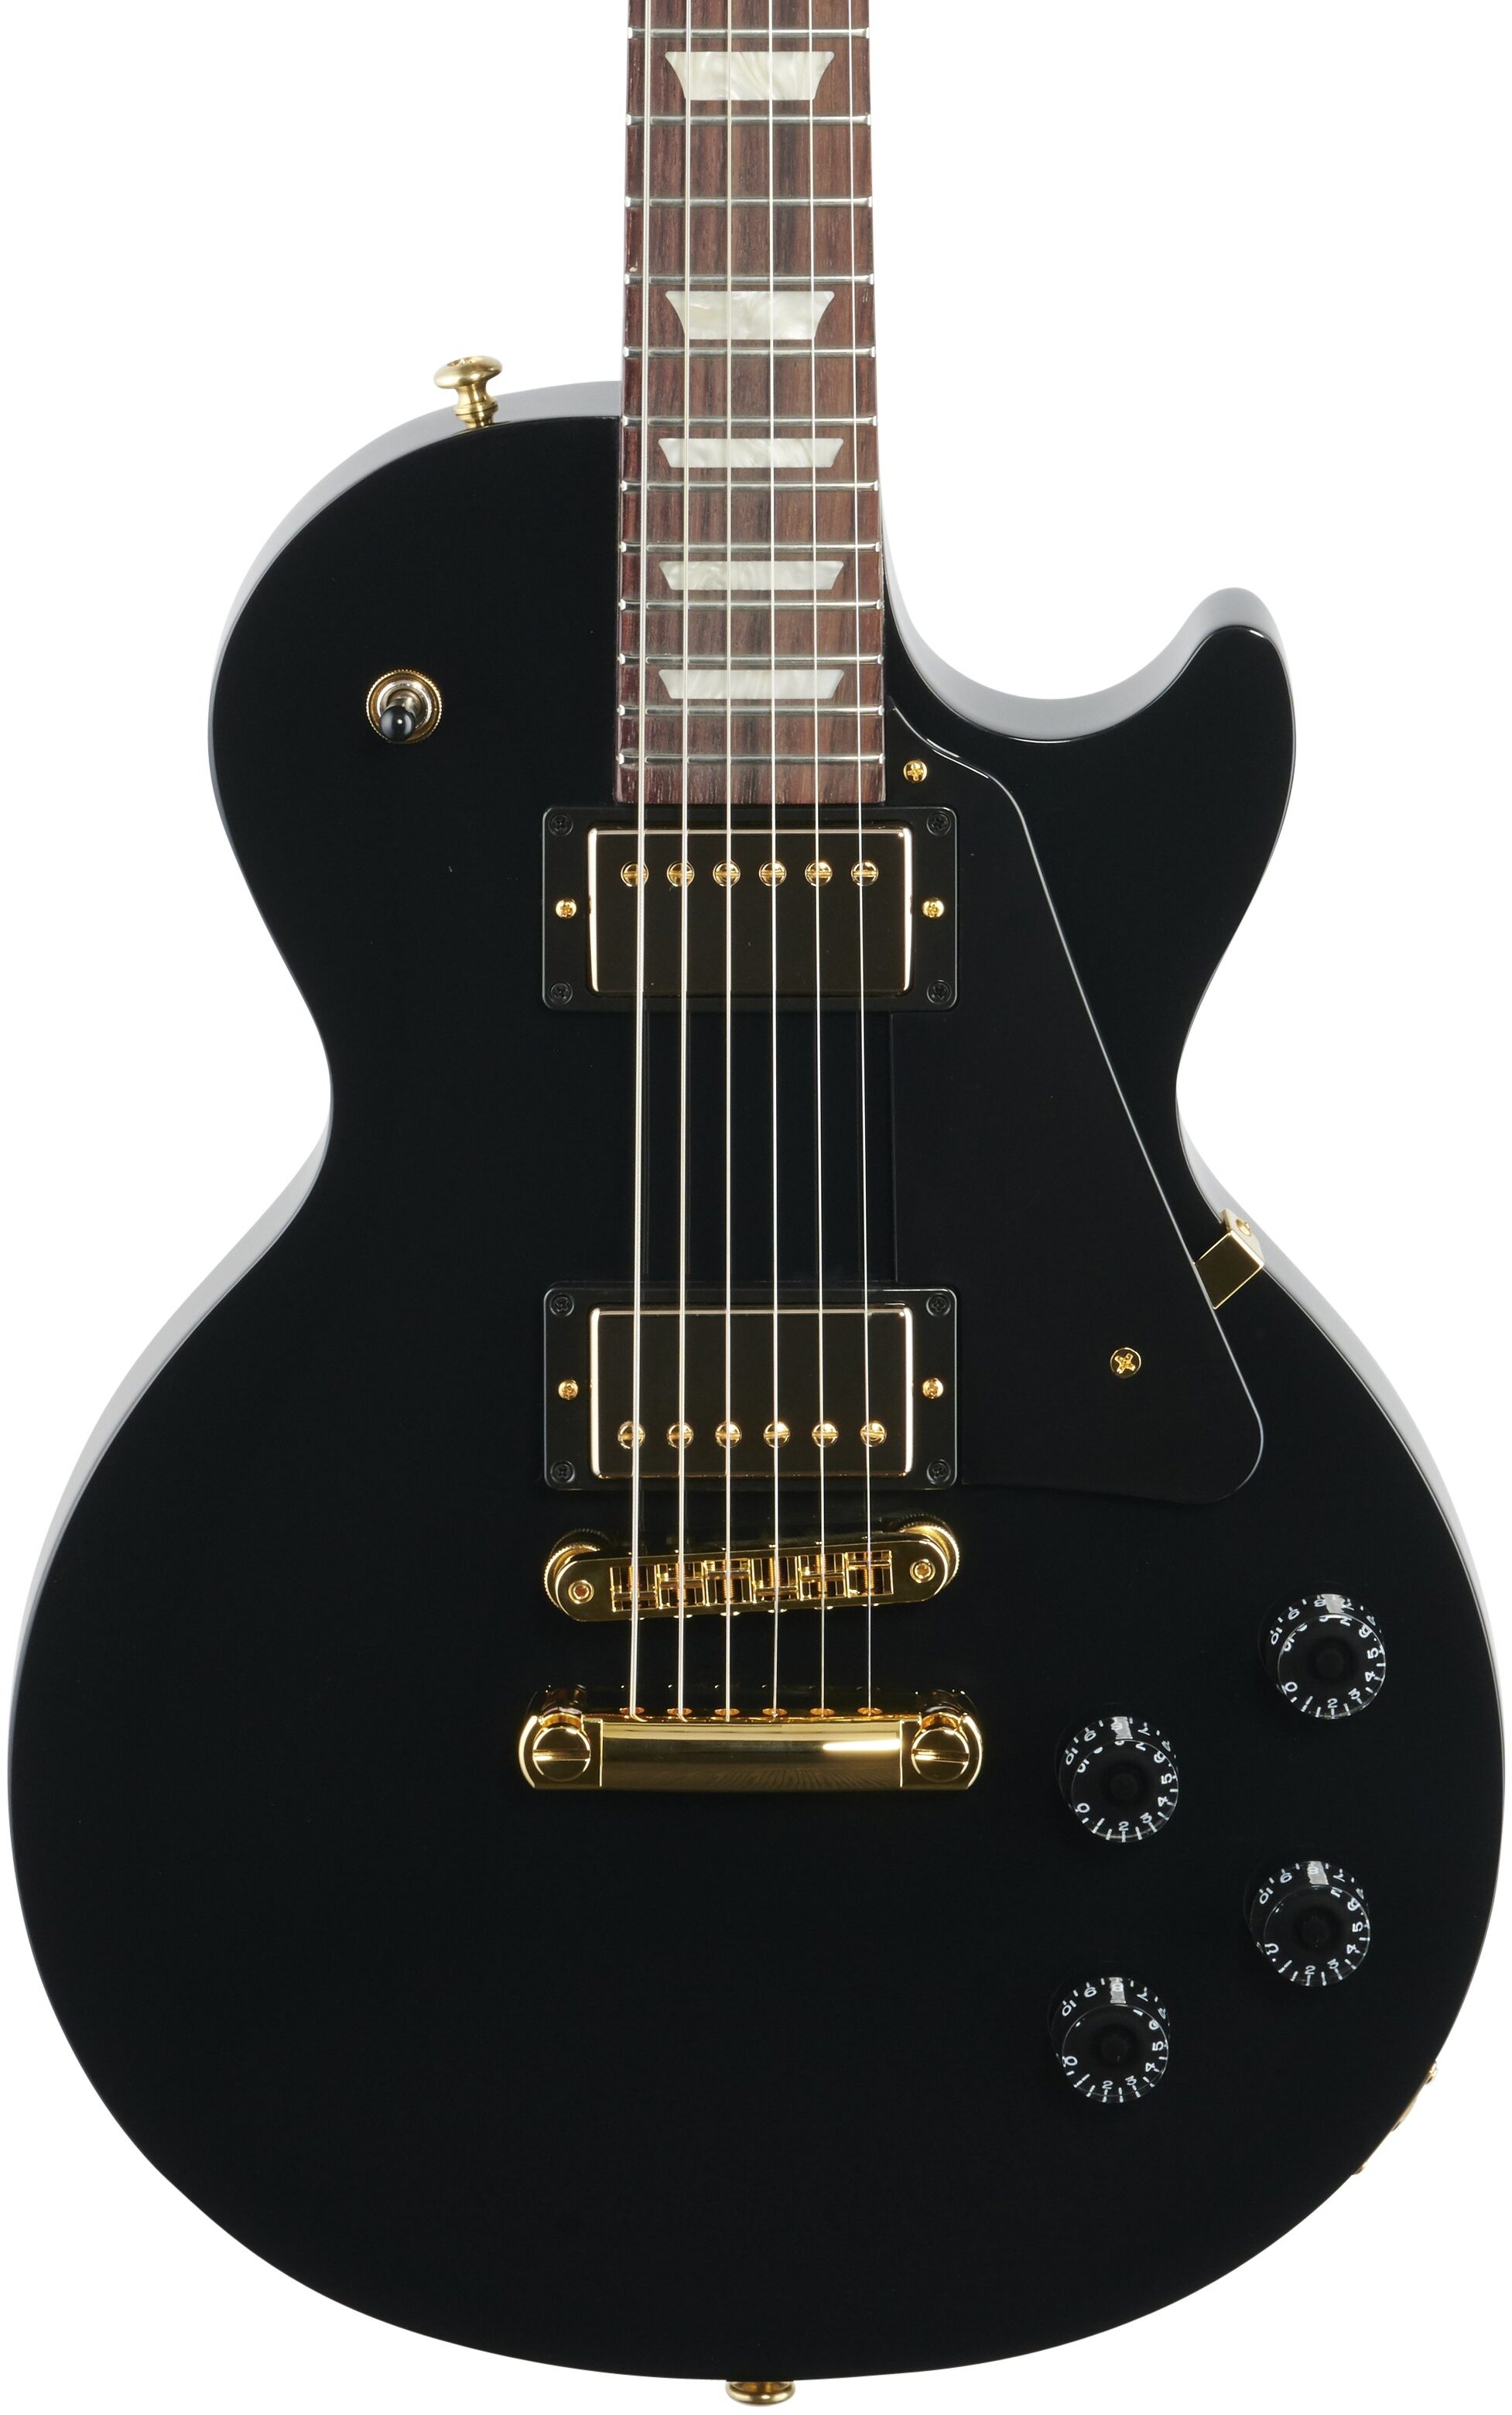 41 割引人気の新作 Gibson Usa レスポールスタジオ Gold Series Ebony エレキギター おもちゃ ホビー グッズ Aci Md